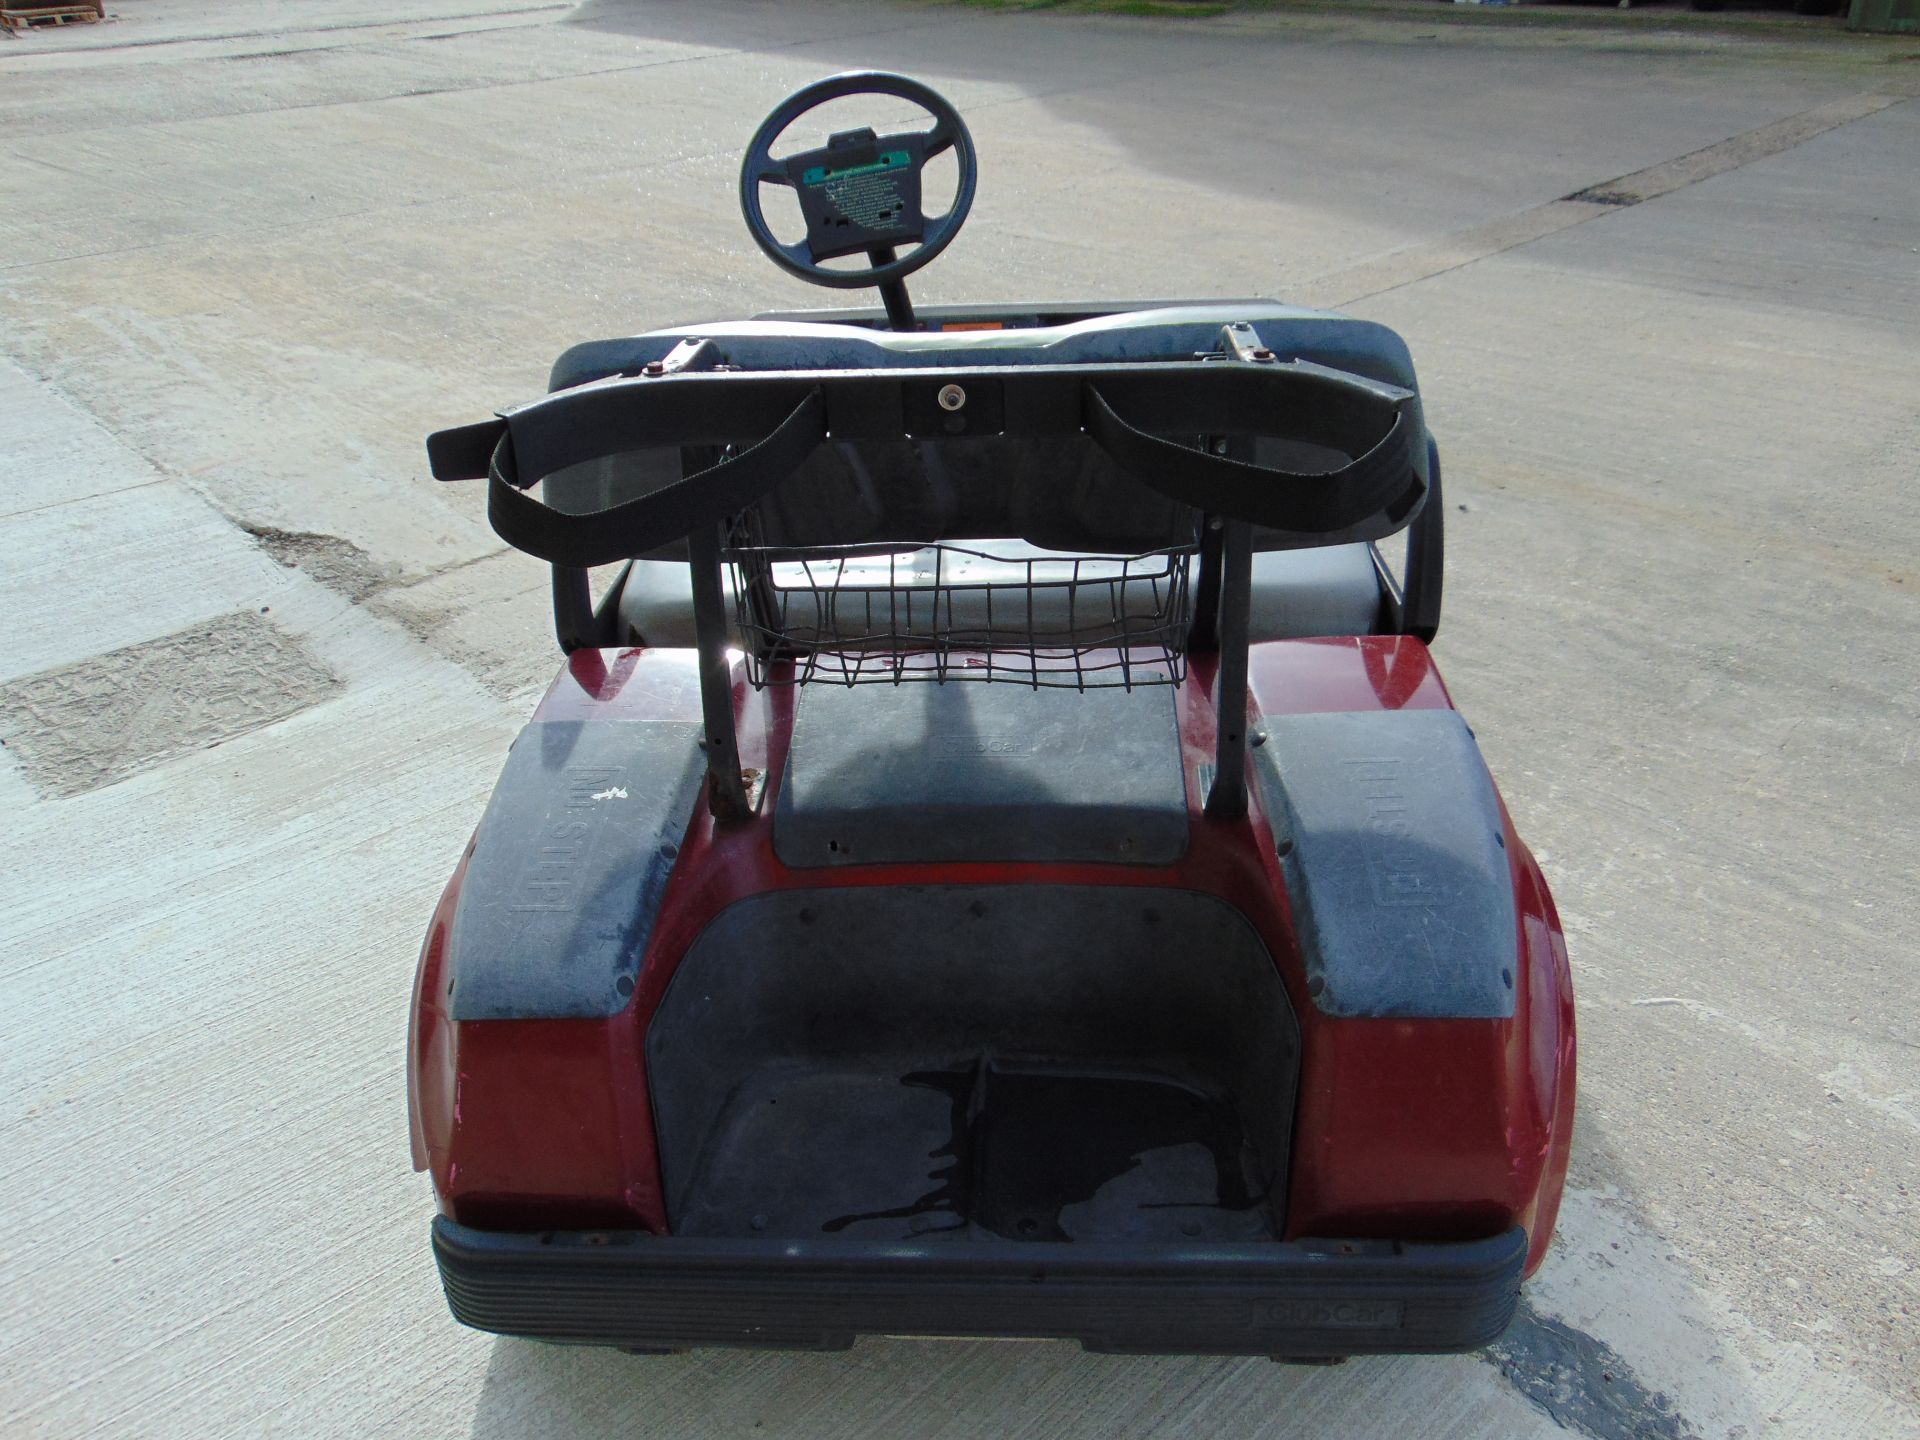 Club Car Golf Cart - Petrol Engine - Image 4 of 17